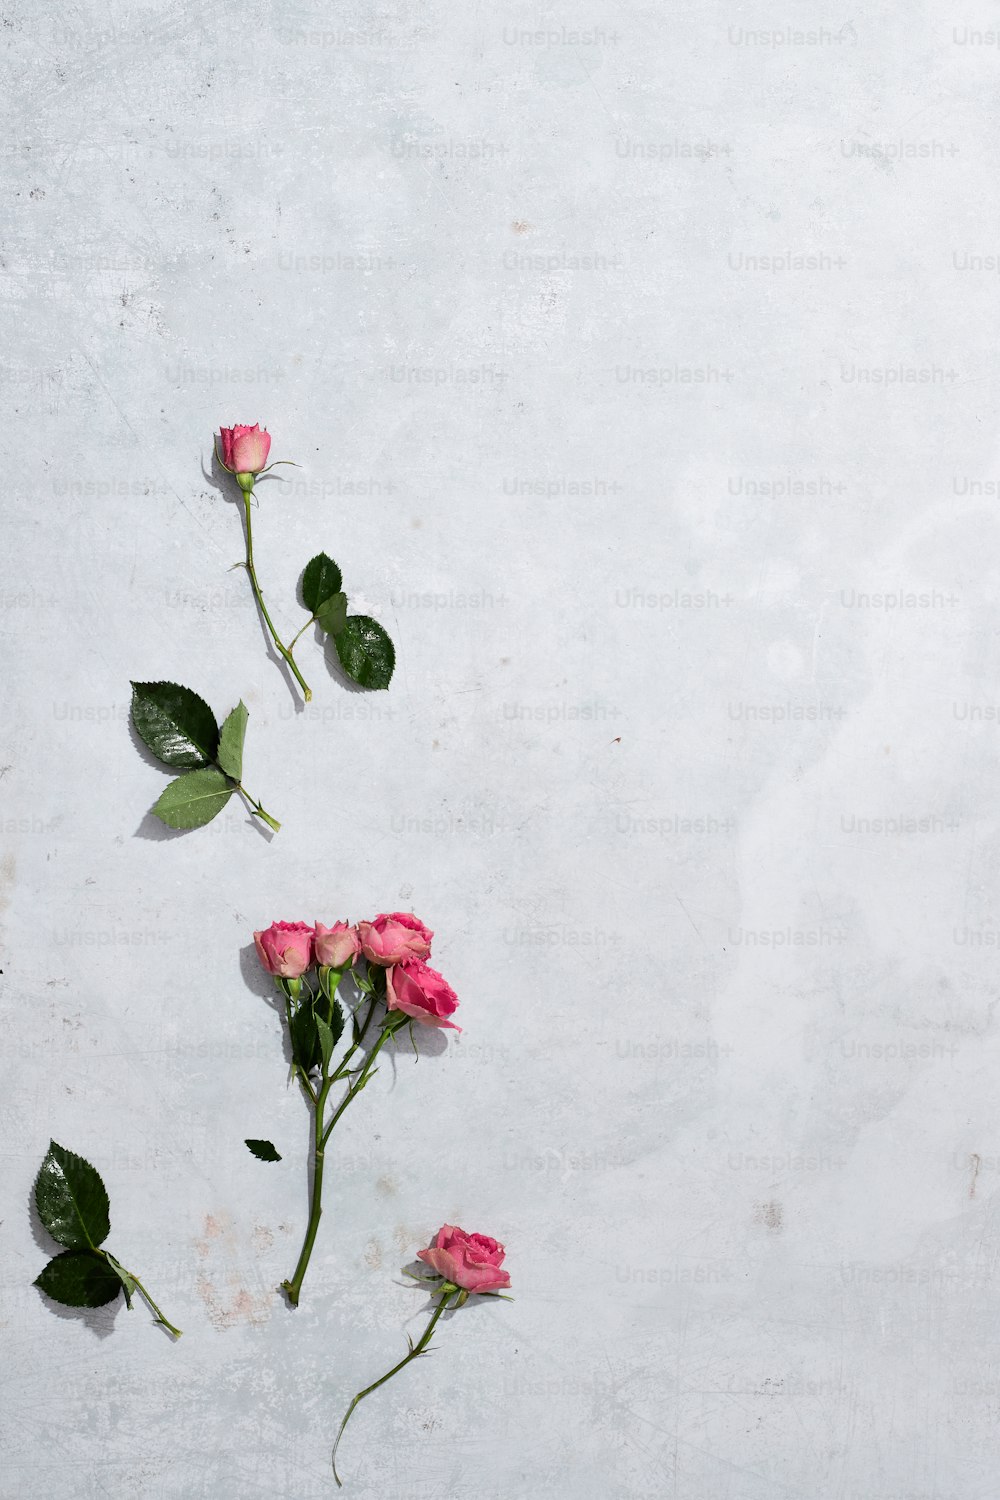 tre rose rosa con foglie verdi su sfondo bianco